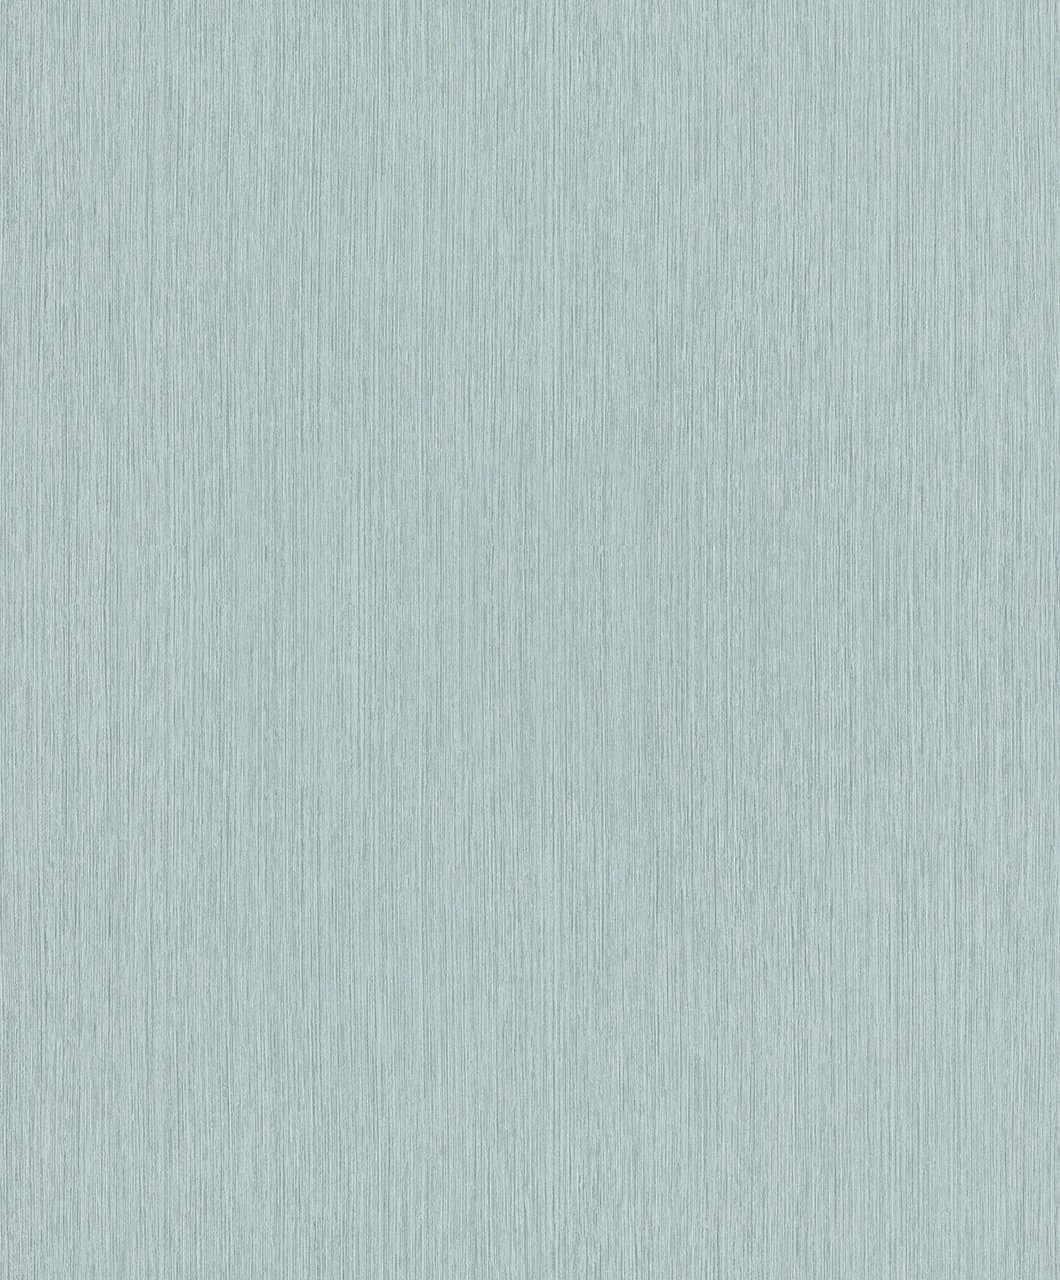 Marburg Vliestapete, unifarben, gut lichtbeständig, restlos abziehbar grau/beige